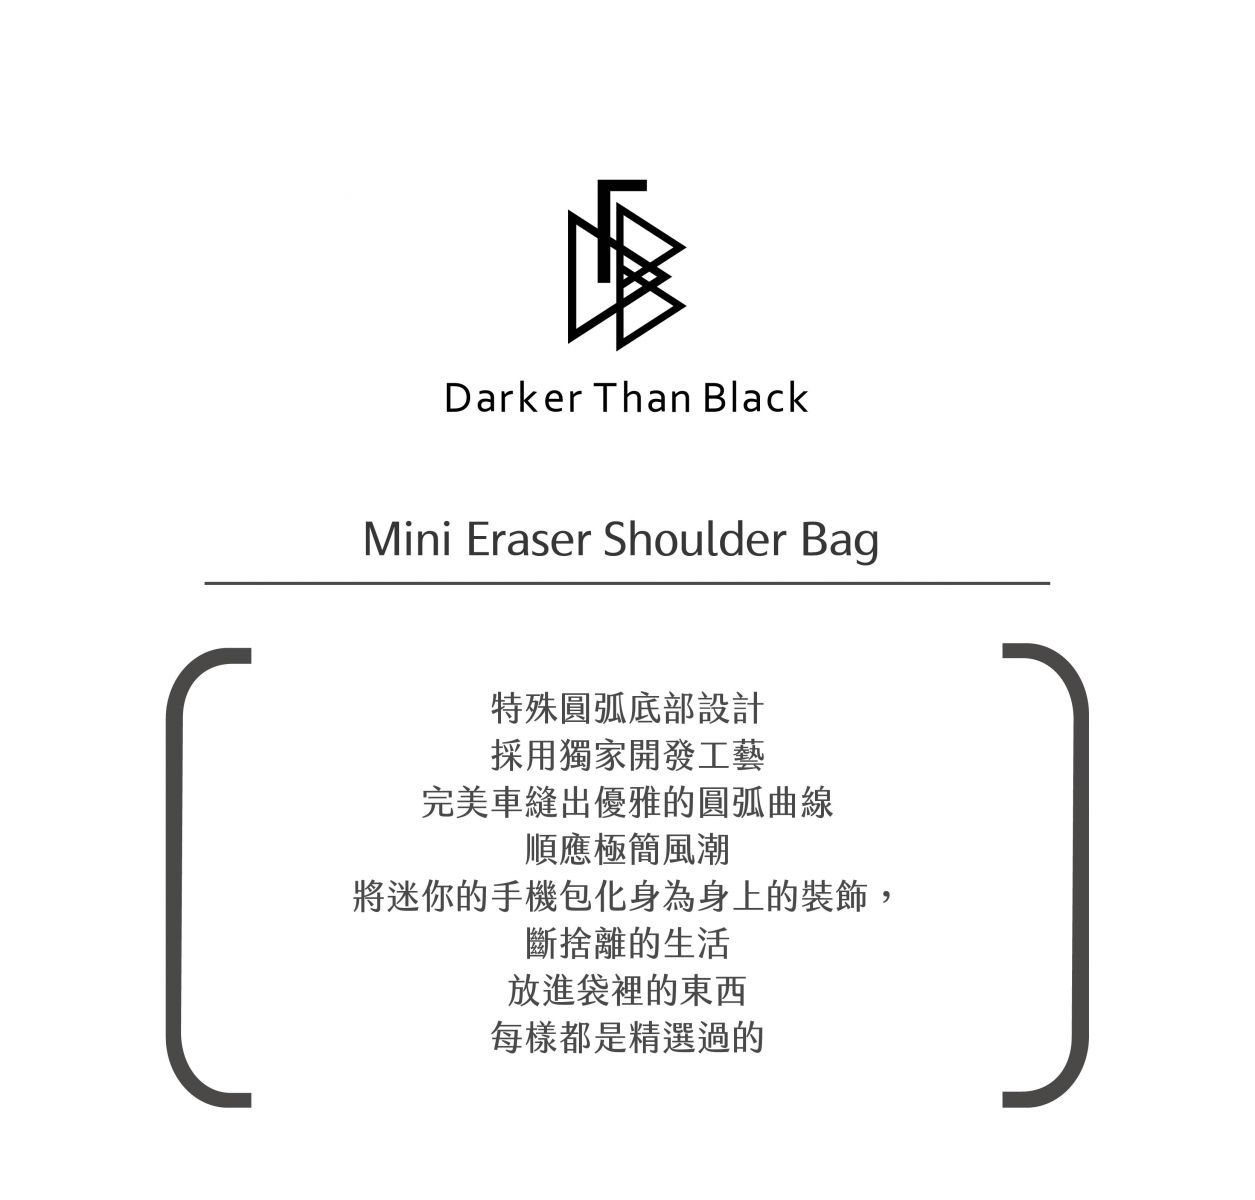 Mini Eraser Shoulder Bag 迷你圓弧隨身包